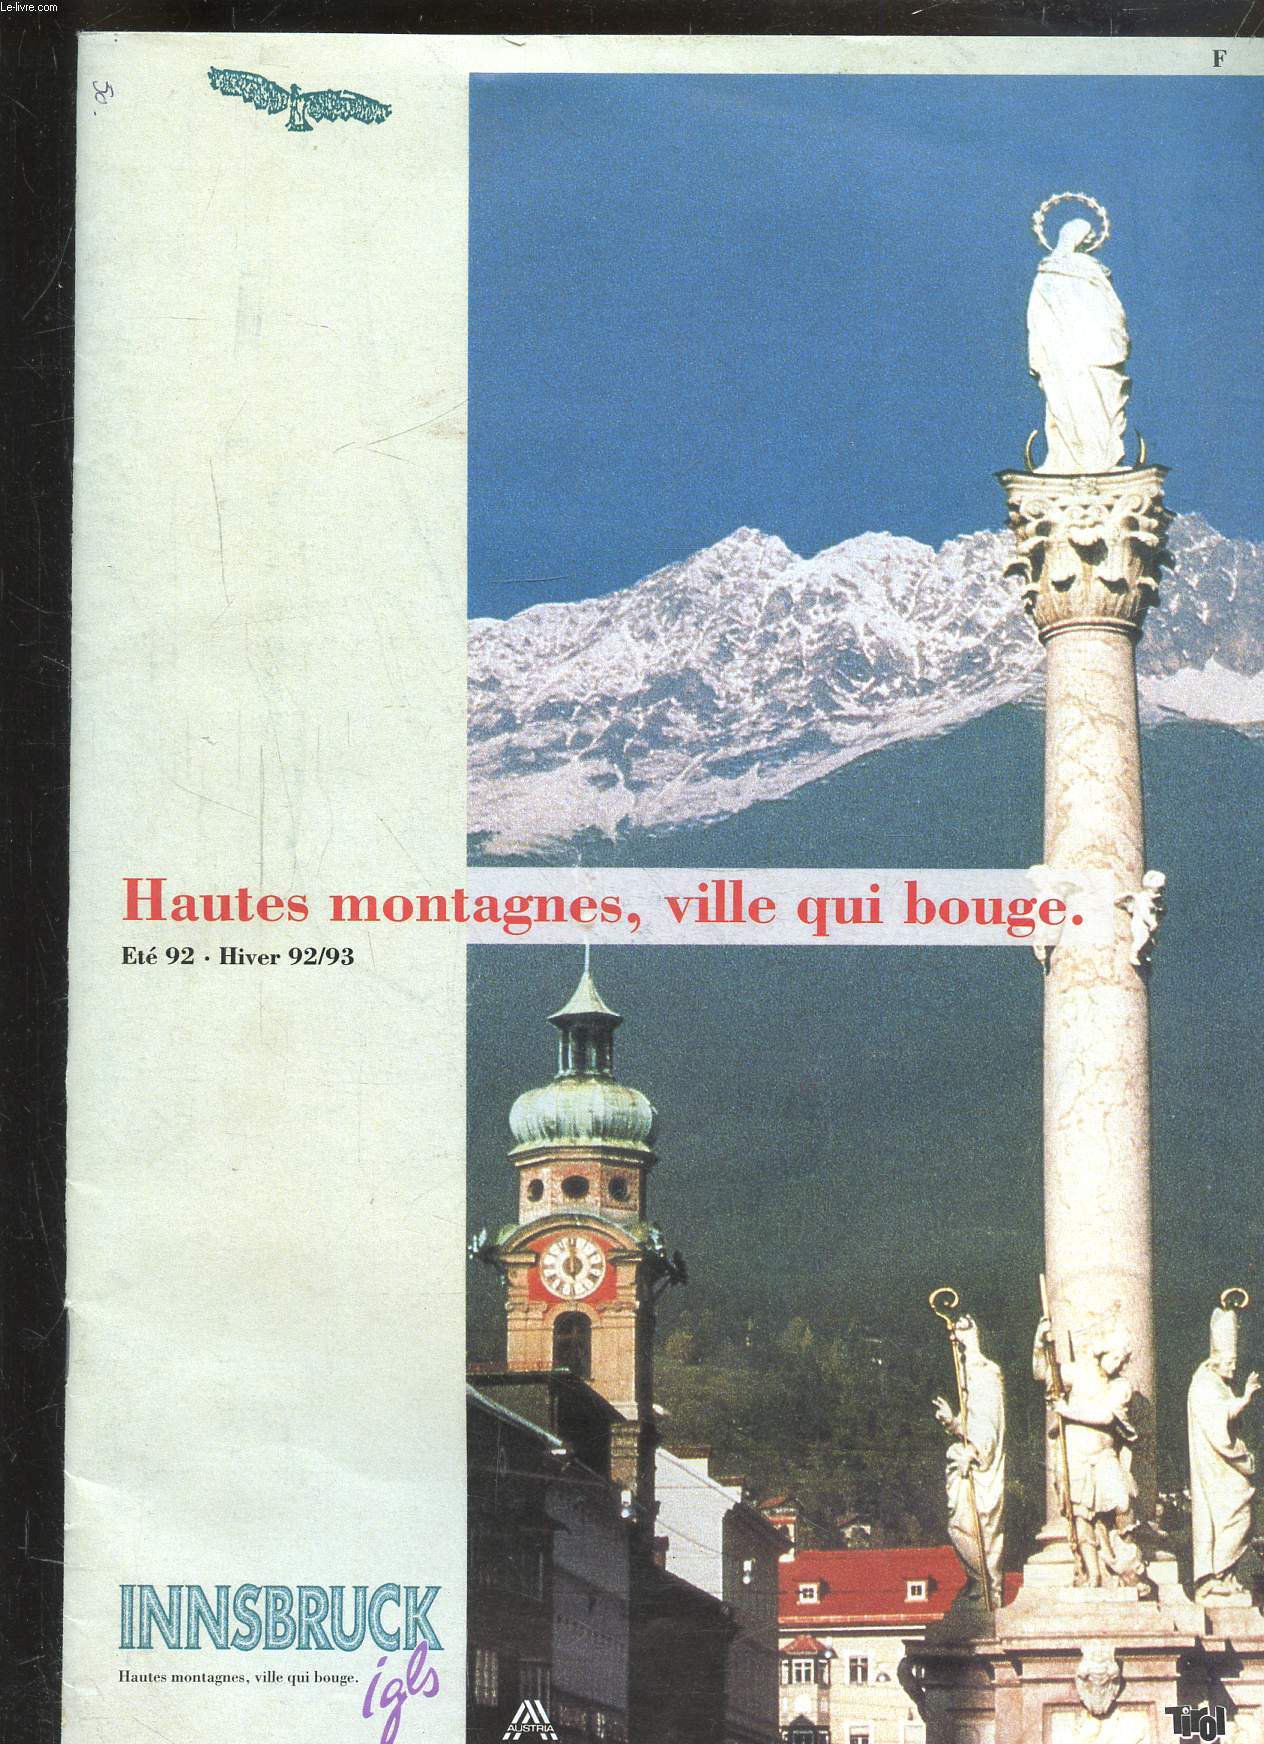 HAUTES MONTAGNES, VILLE QUI BOUGE - ETE 92 - HIVER 92/93